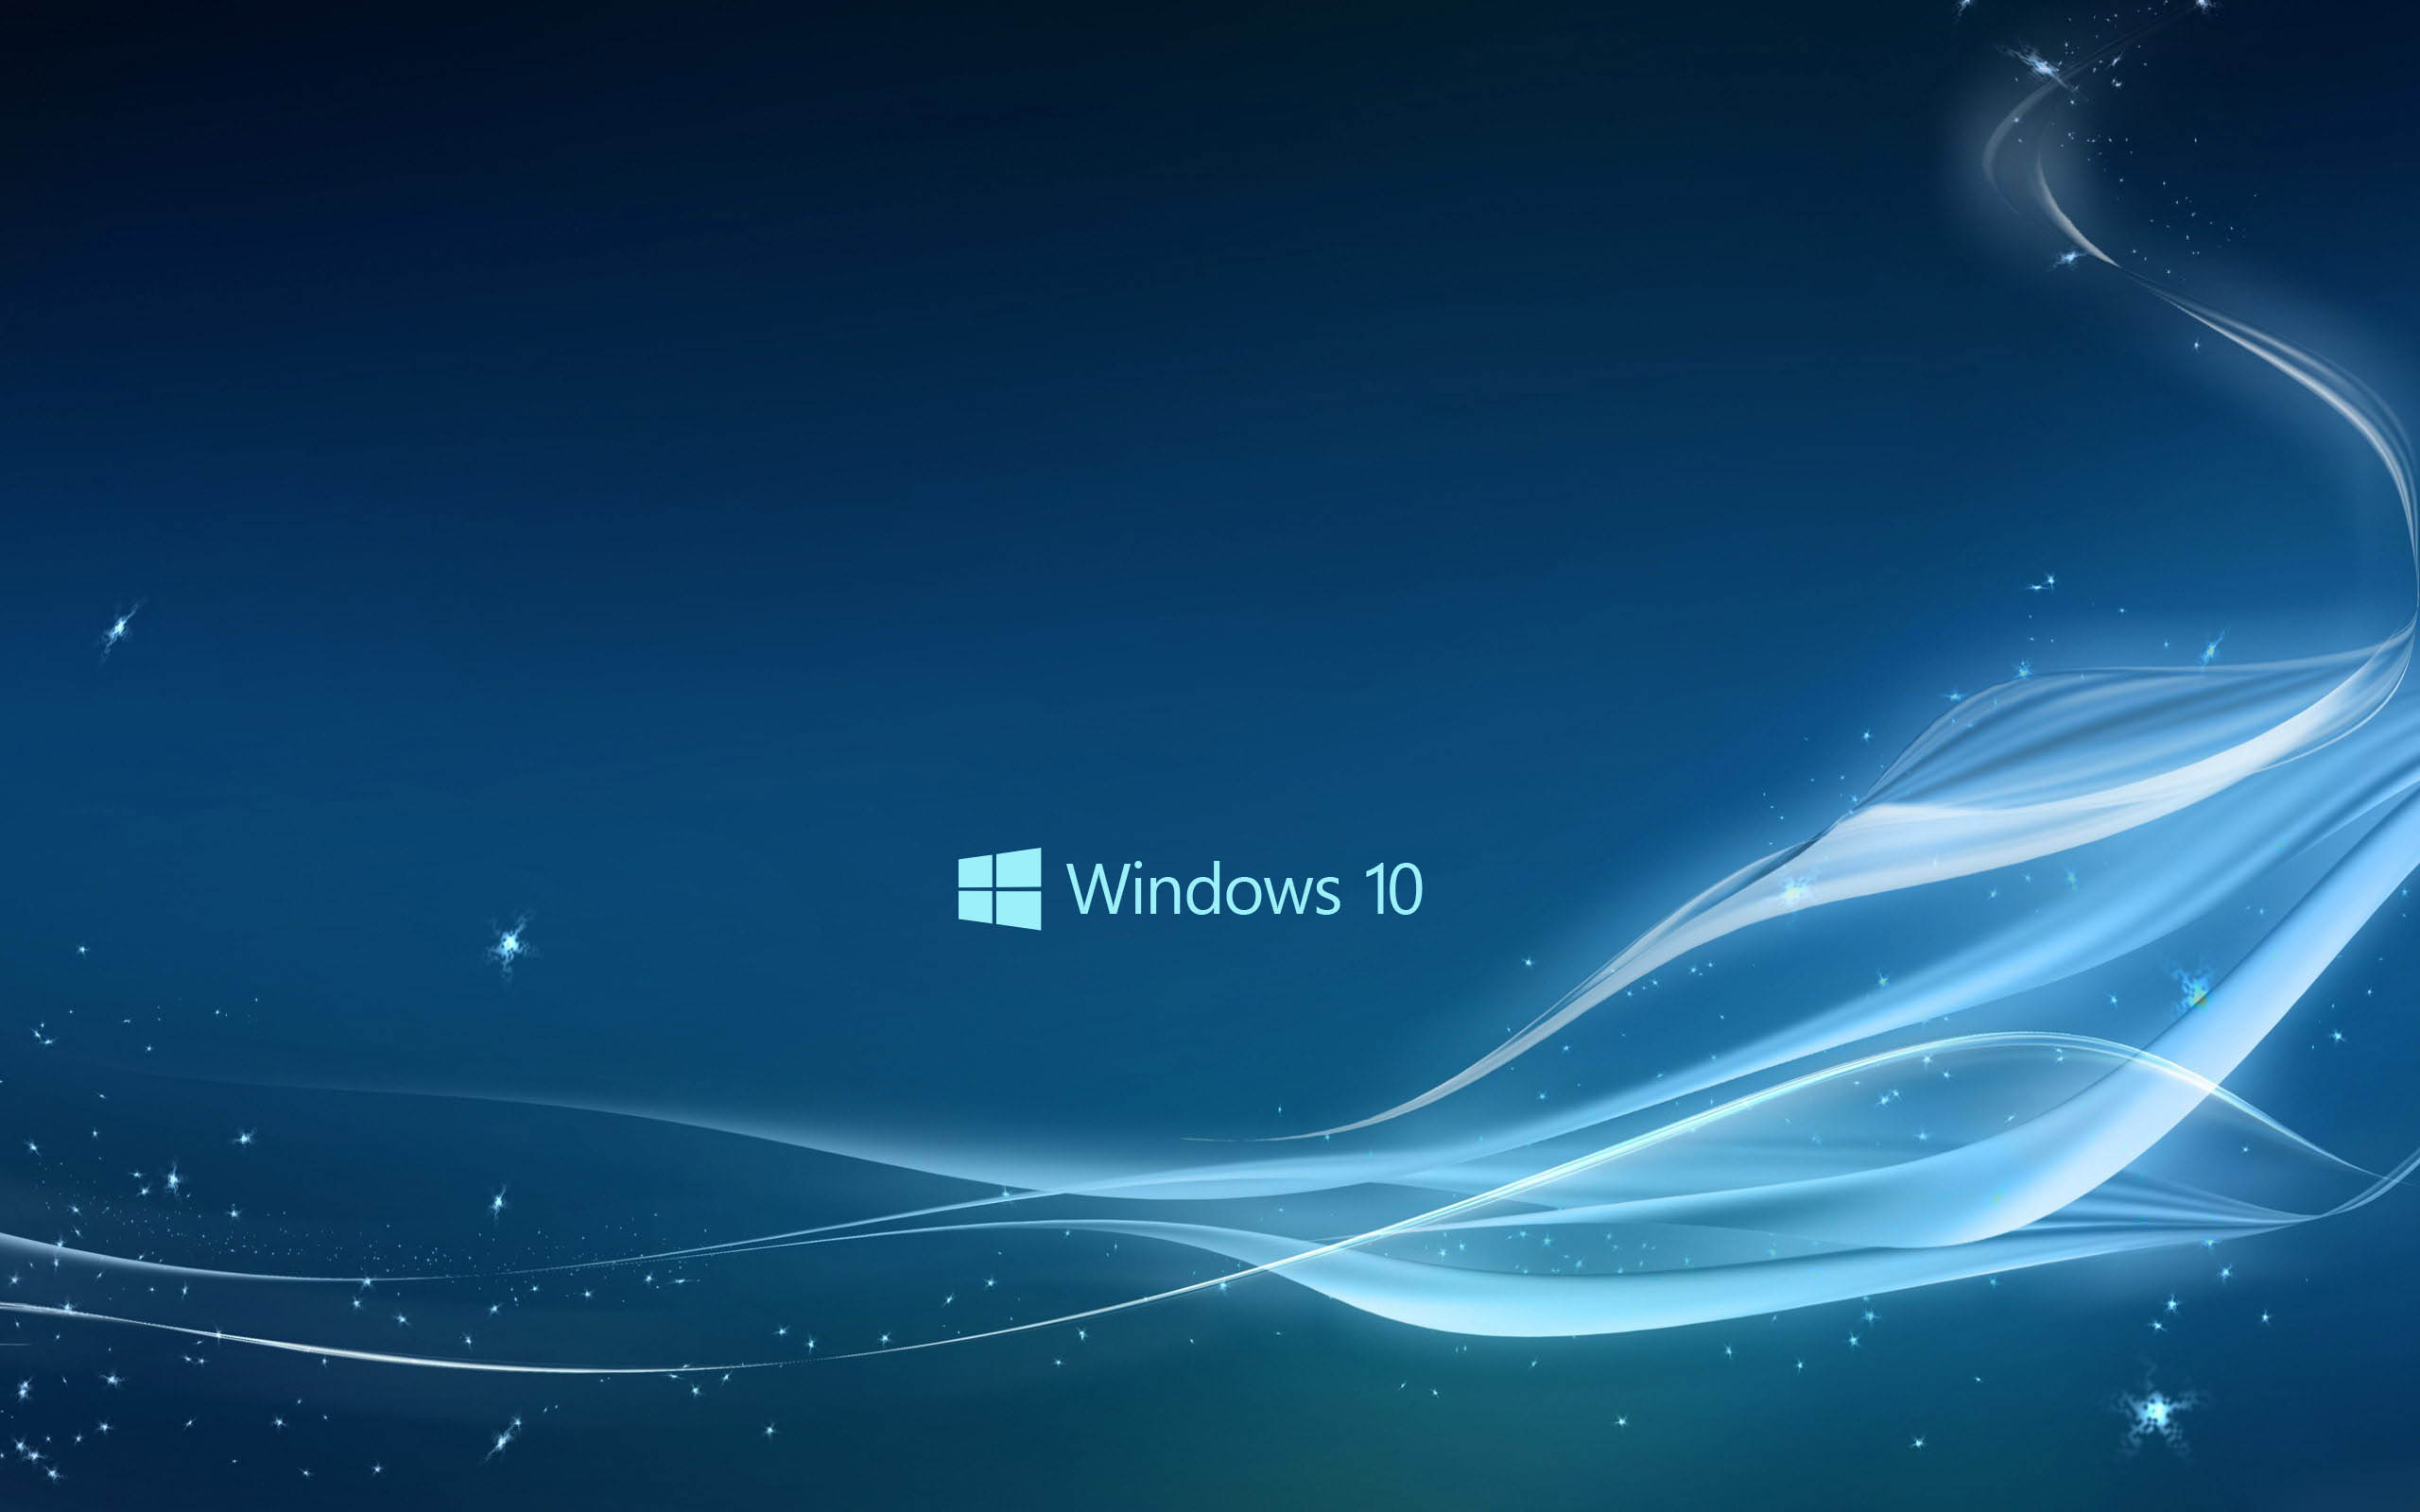 Trong khoảng thời gian hoạt động hàng ngày của bạn, hình nền Windows 10 đẹp sẽ mang lại cho bạn sự mới mẻ và trang trí cho màn hình desktop. Lựa chọn hình nền đẹp và thể hiện phong cách của bạn trên máy tính.